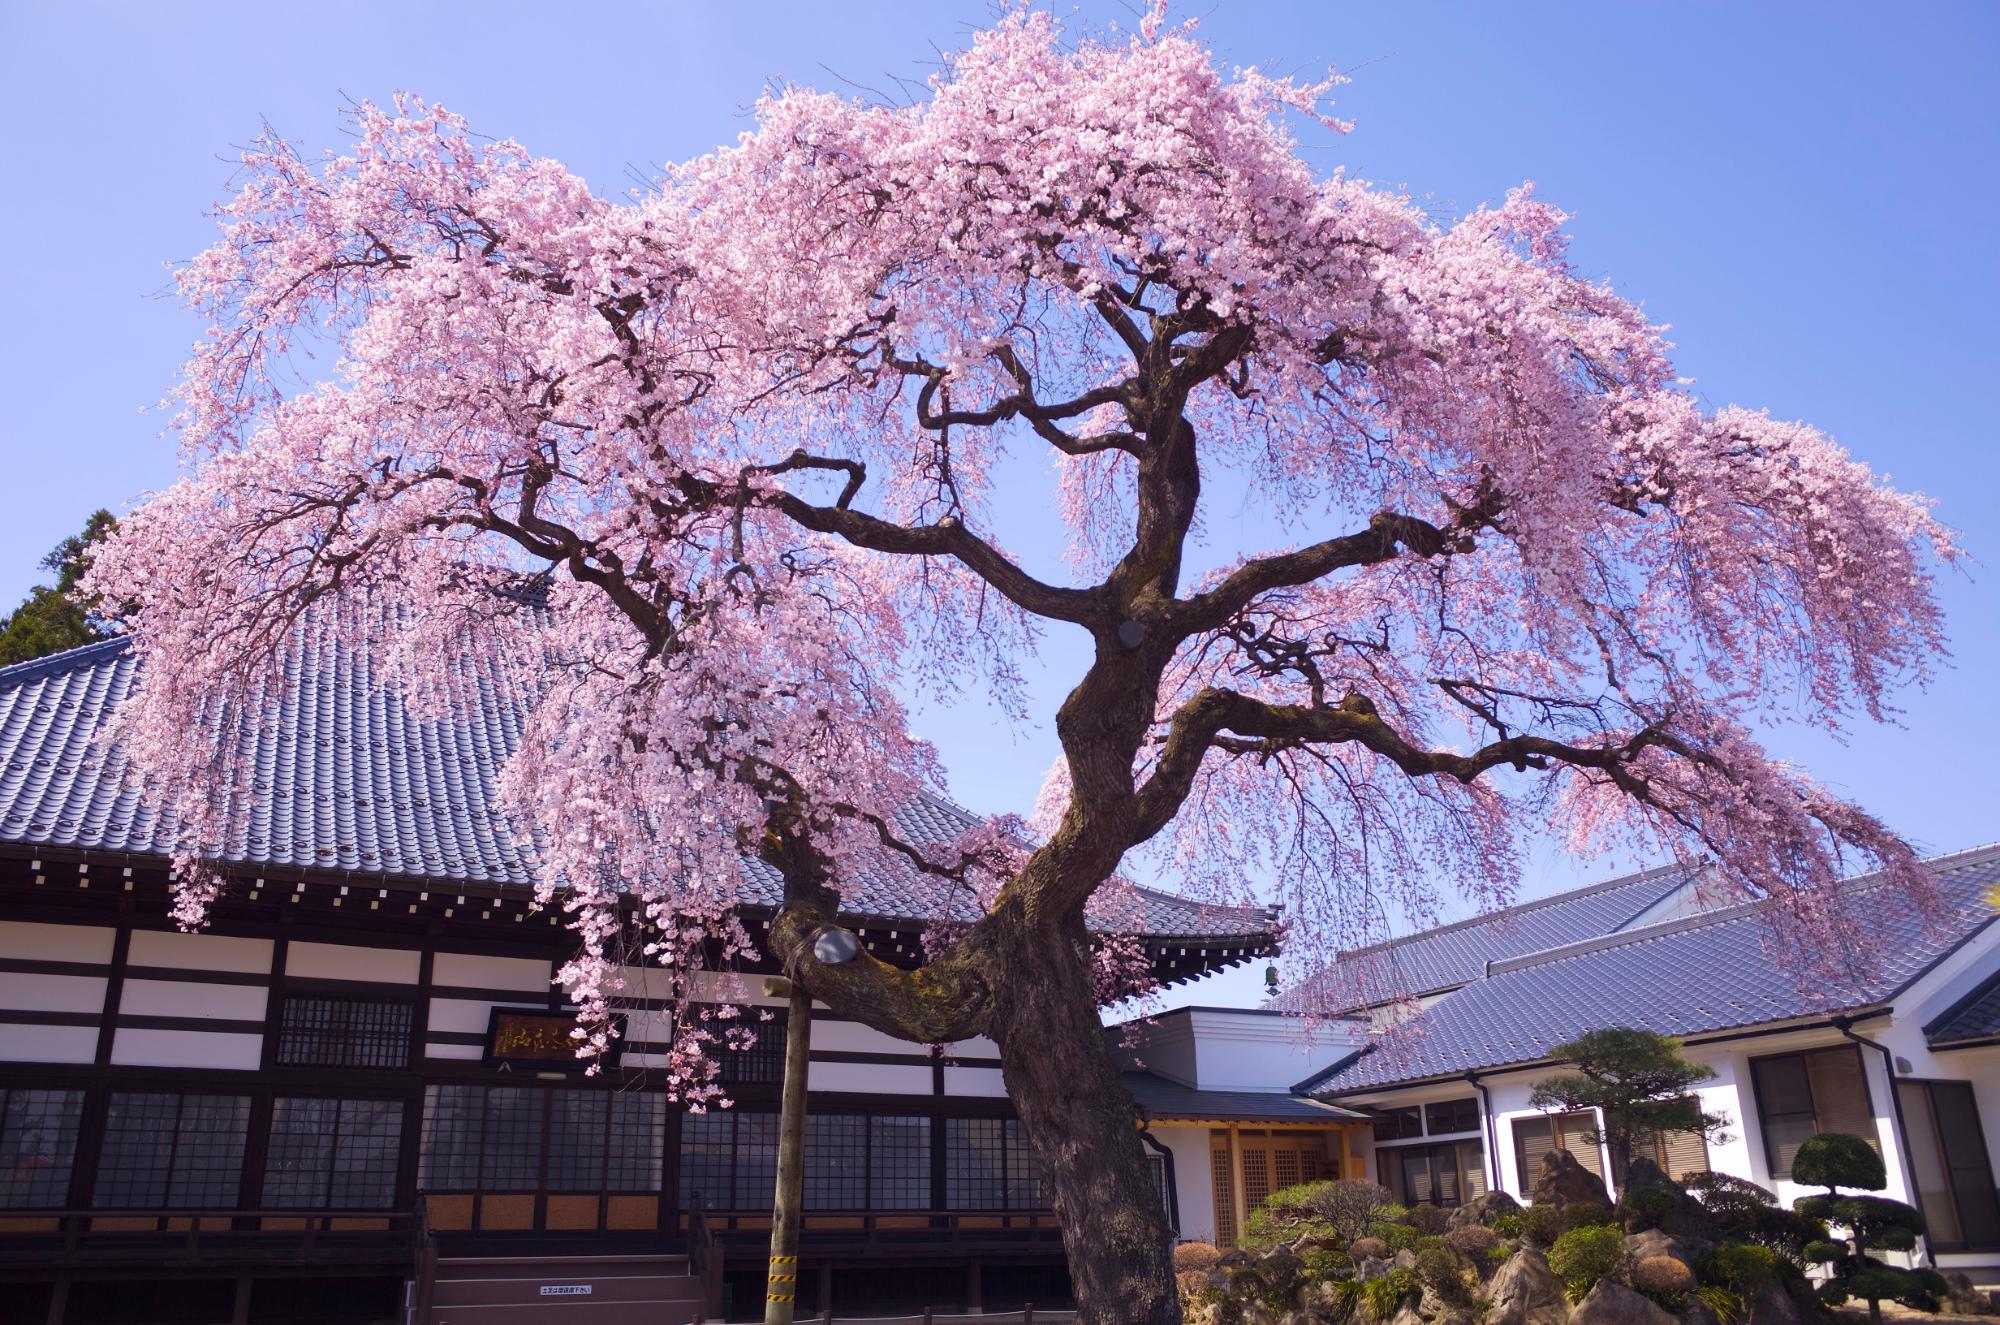 相応寺のしだれ桜の画像